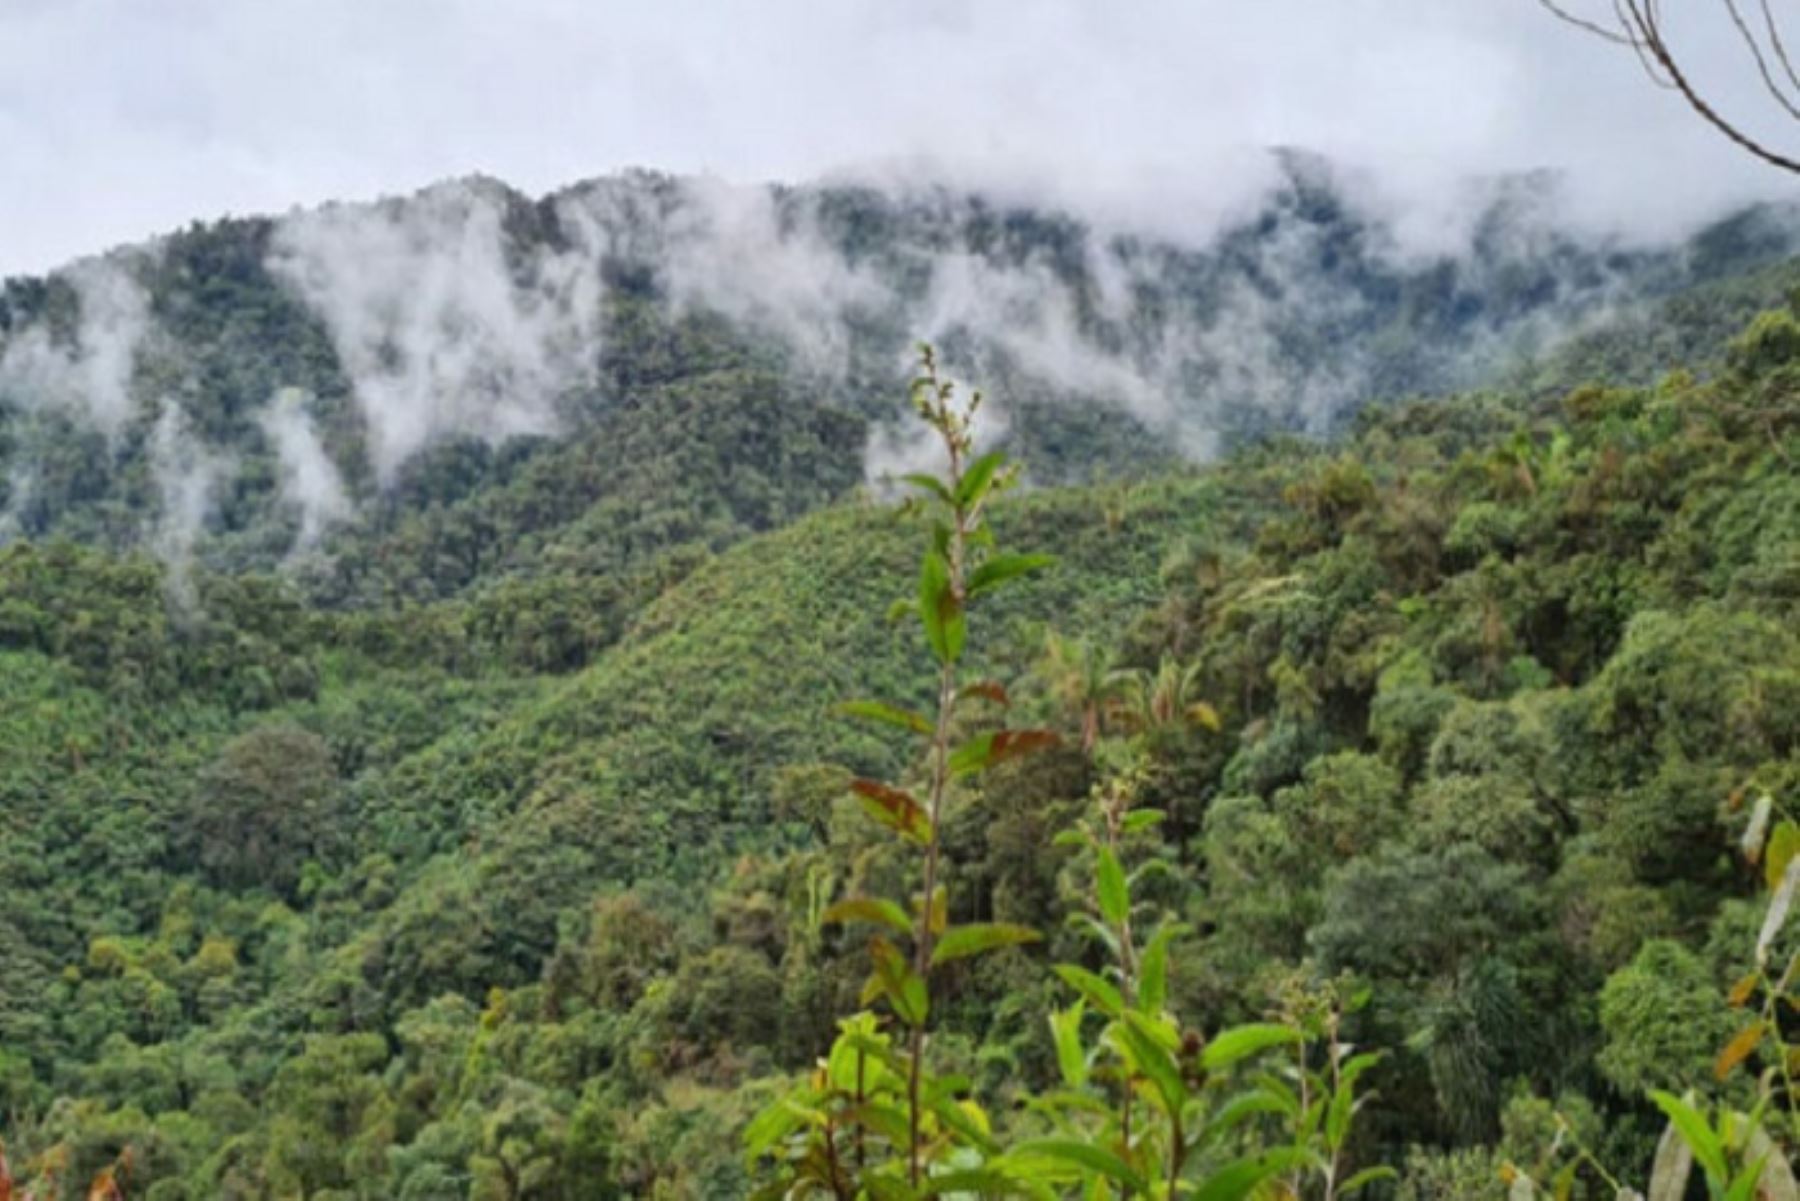 La importancia del Área de Conservación Pirivada Checca radica en la conectividad con el corredor biológico que abarca la Zona Prioritaria para la Conservación Moquegua-Masocruz-Maure